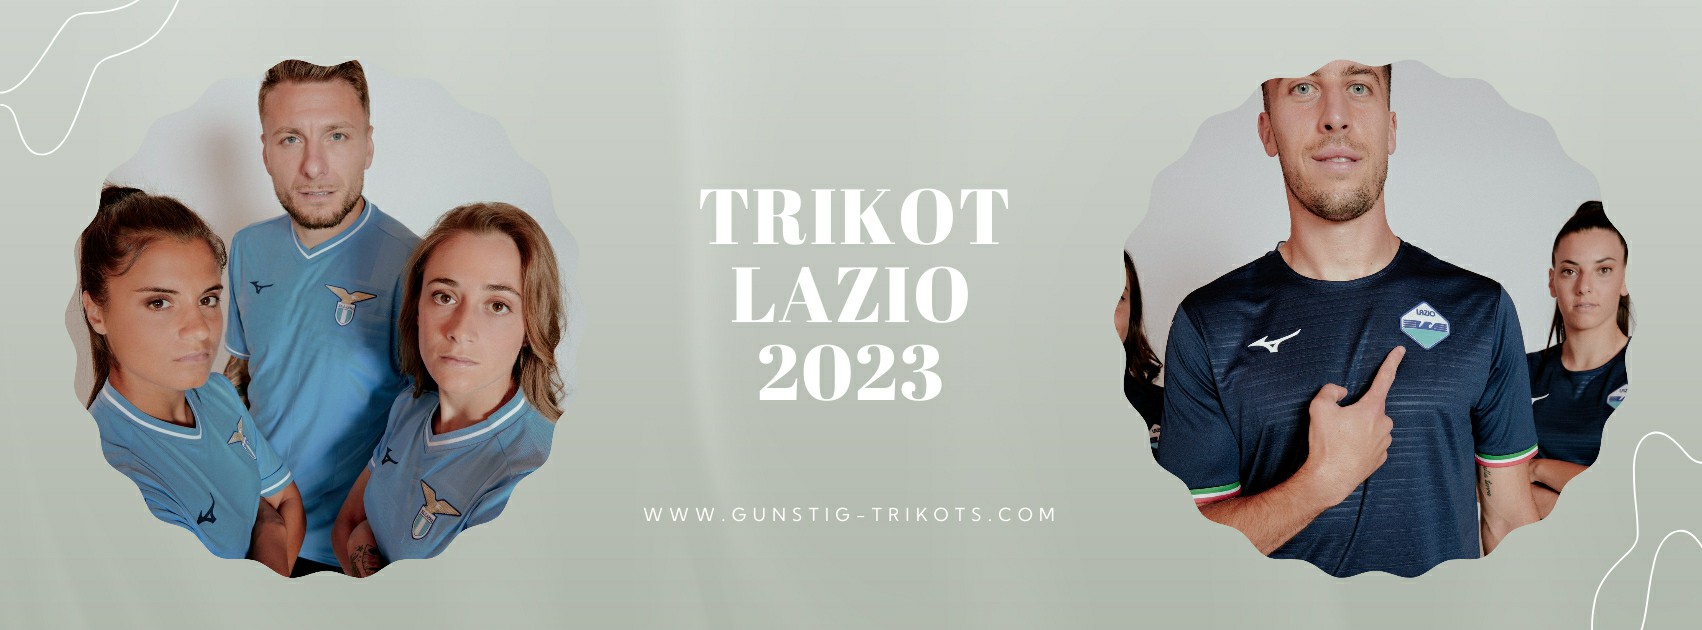 Lazio Trikot 2023-2024